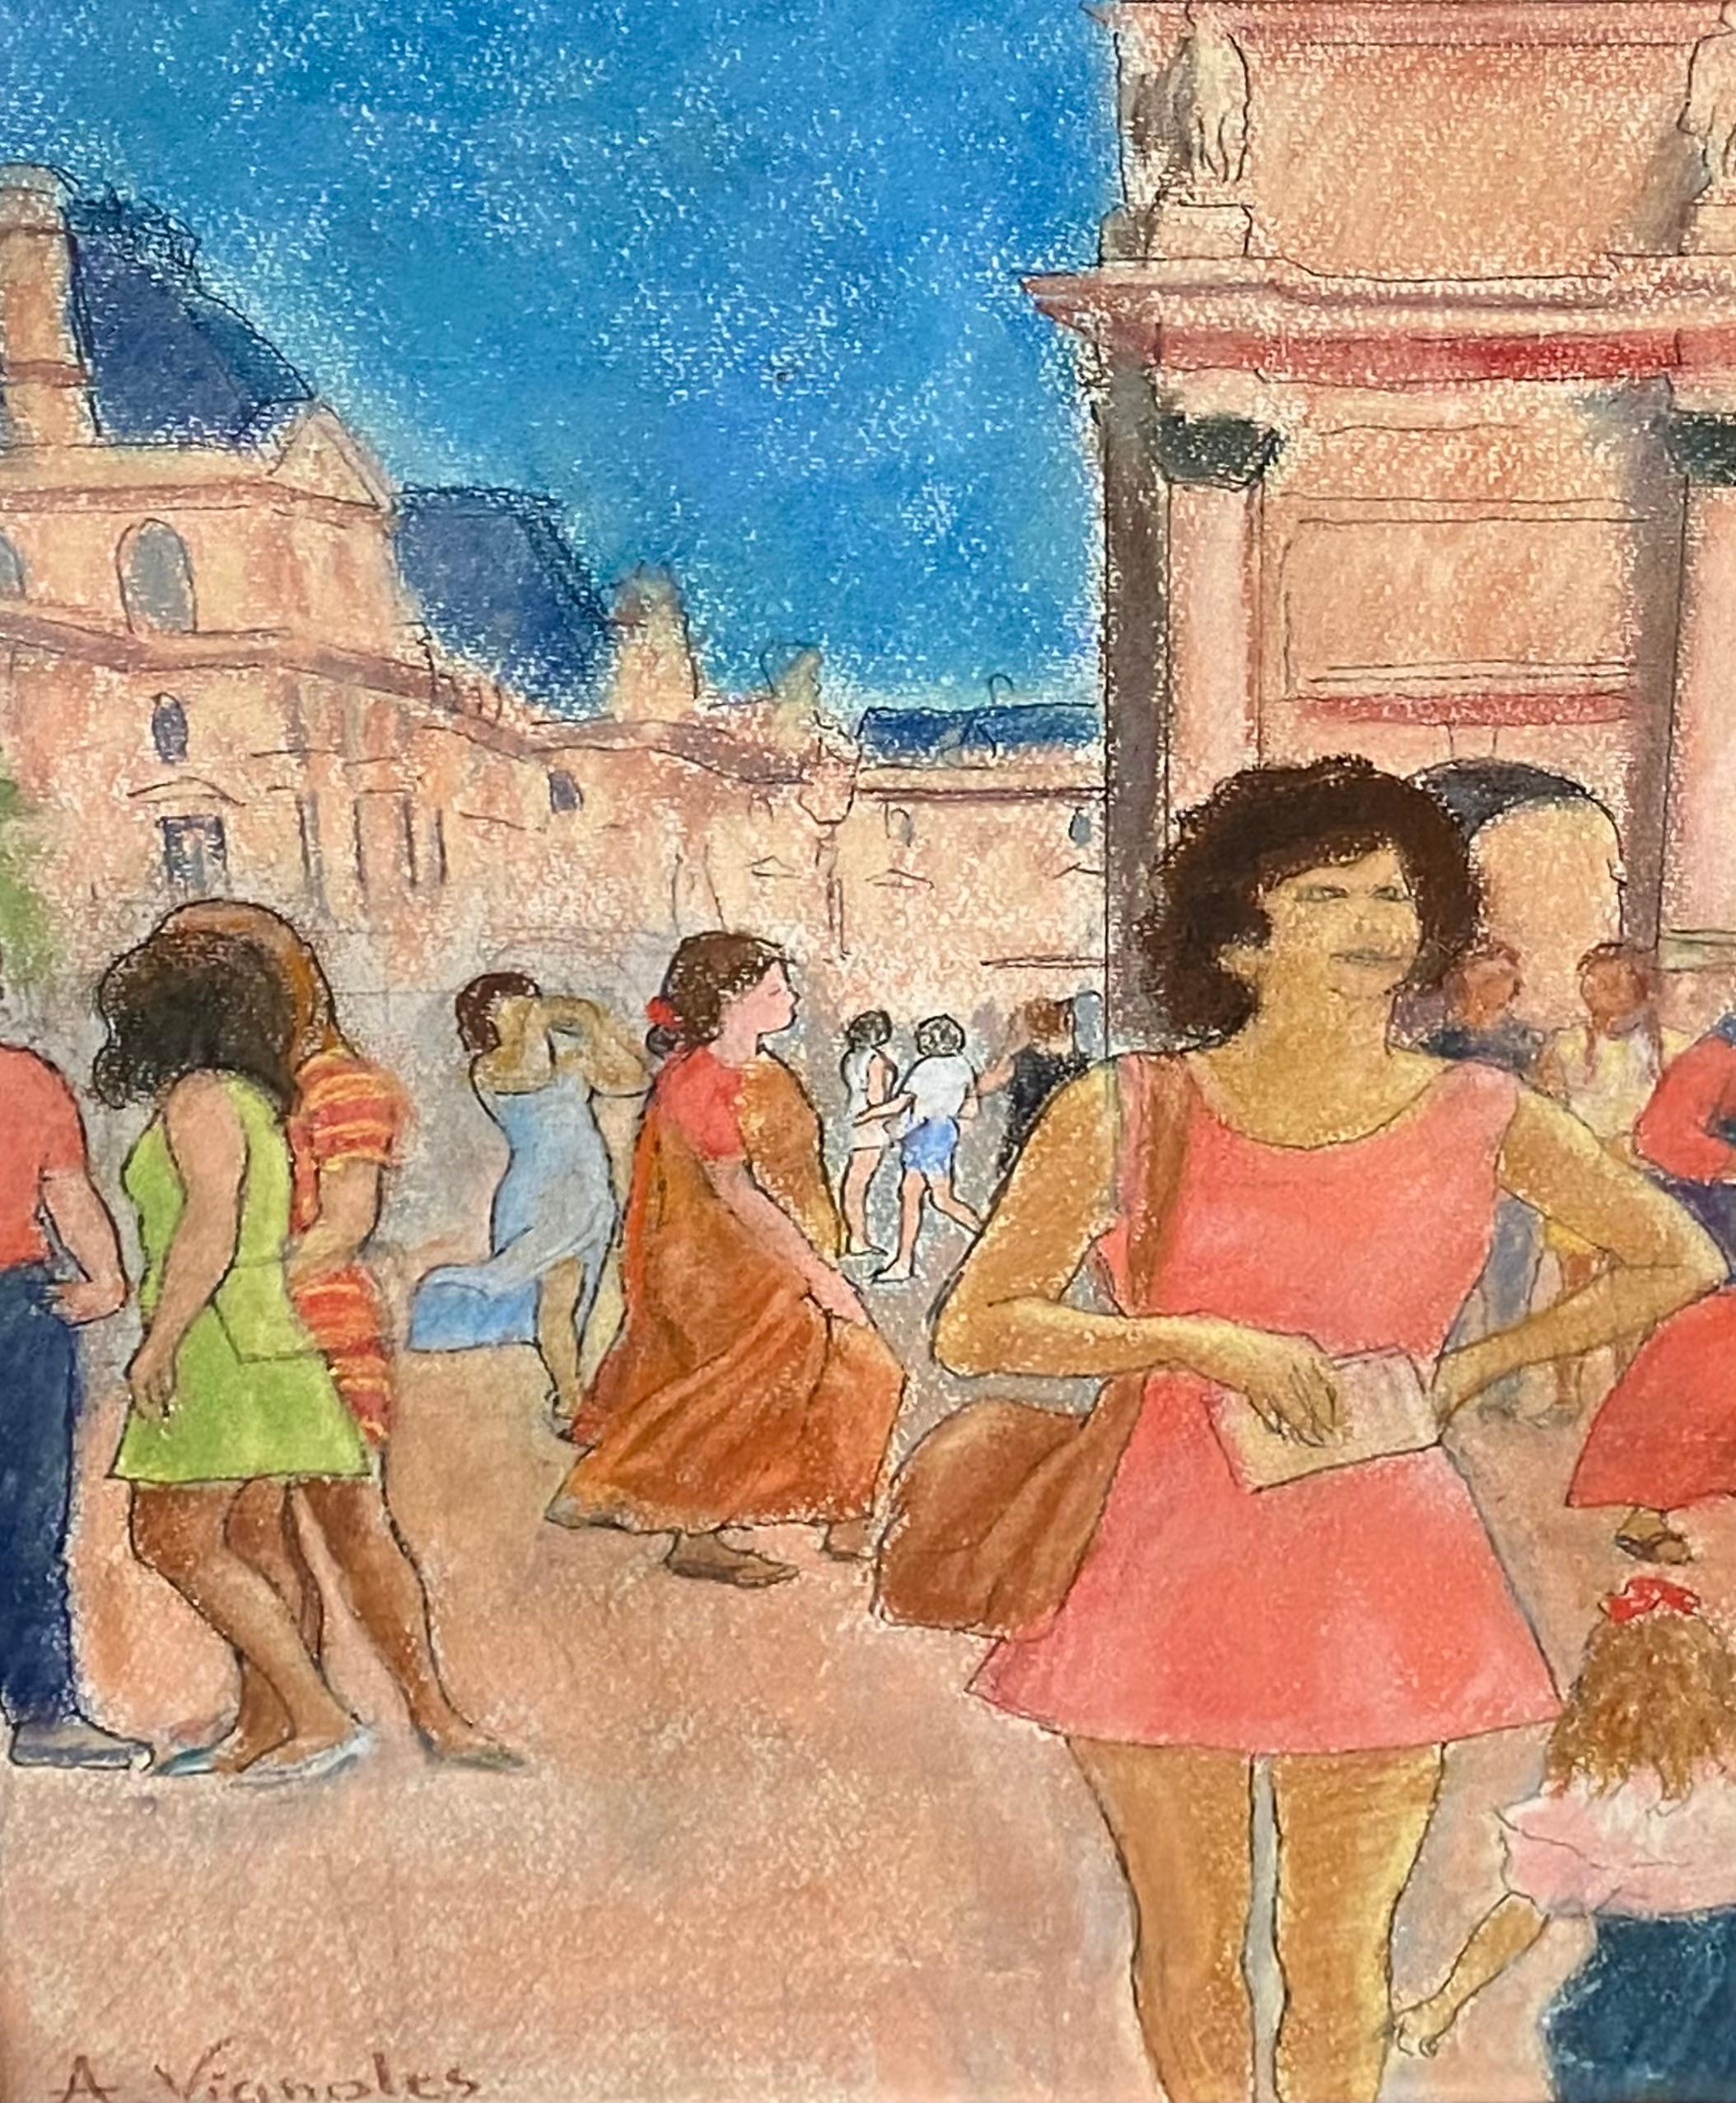 Original-Ölpastell mit Graphitzeichnung einer belebten Pariser Straßenszene vor dem Arc de Triomphe in Paris. Der Künstler ist der bekannte französische Künstler Andre Vignoles.  Signiert unten links vom Künstler. Künstler-Label verso. Der Zustand